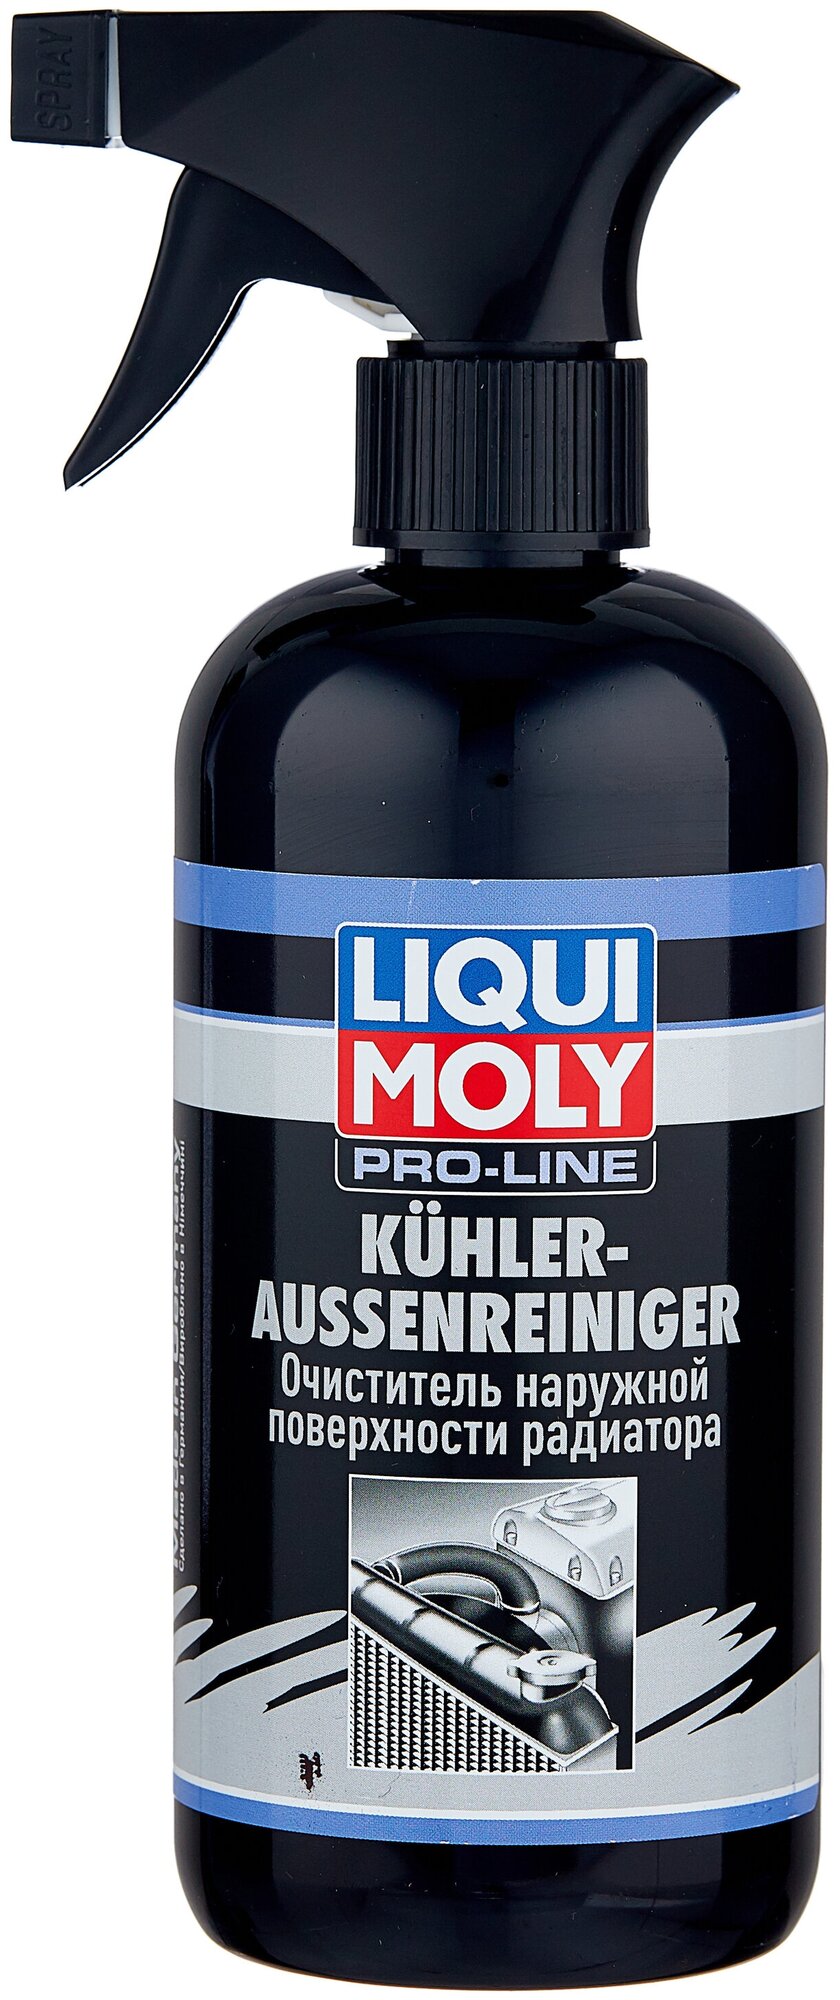 Очиститель внешней поверхности радиатора LIQUI MOLY Kuhler Aussenreiniger